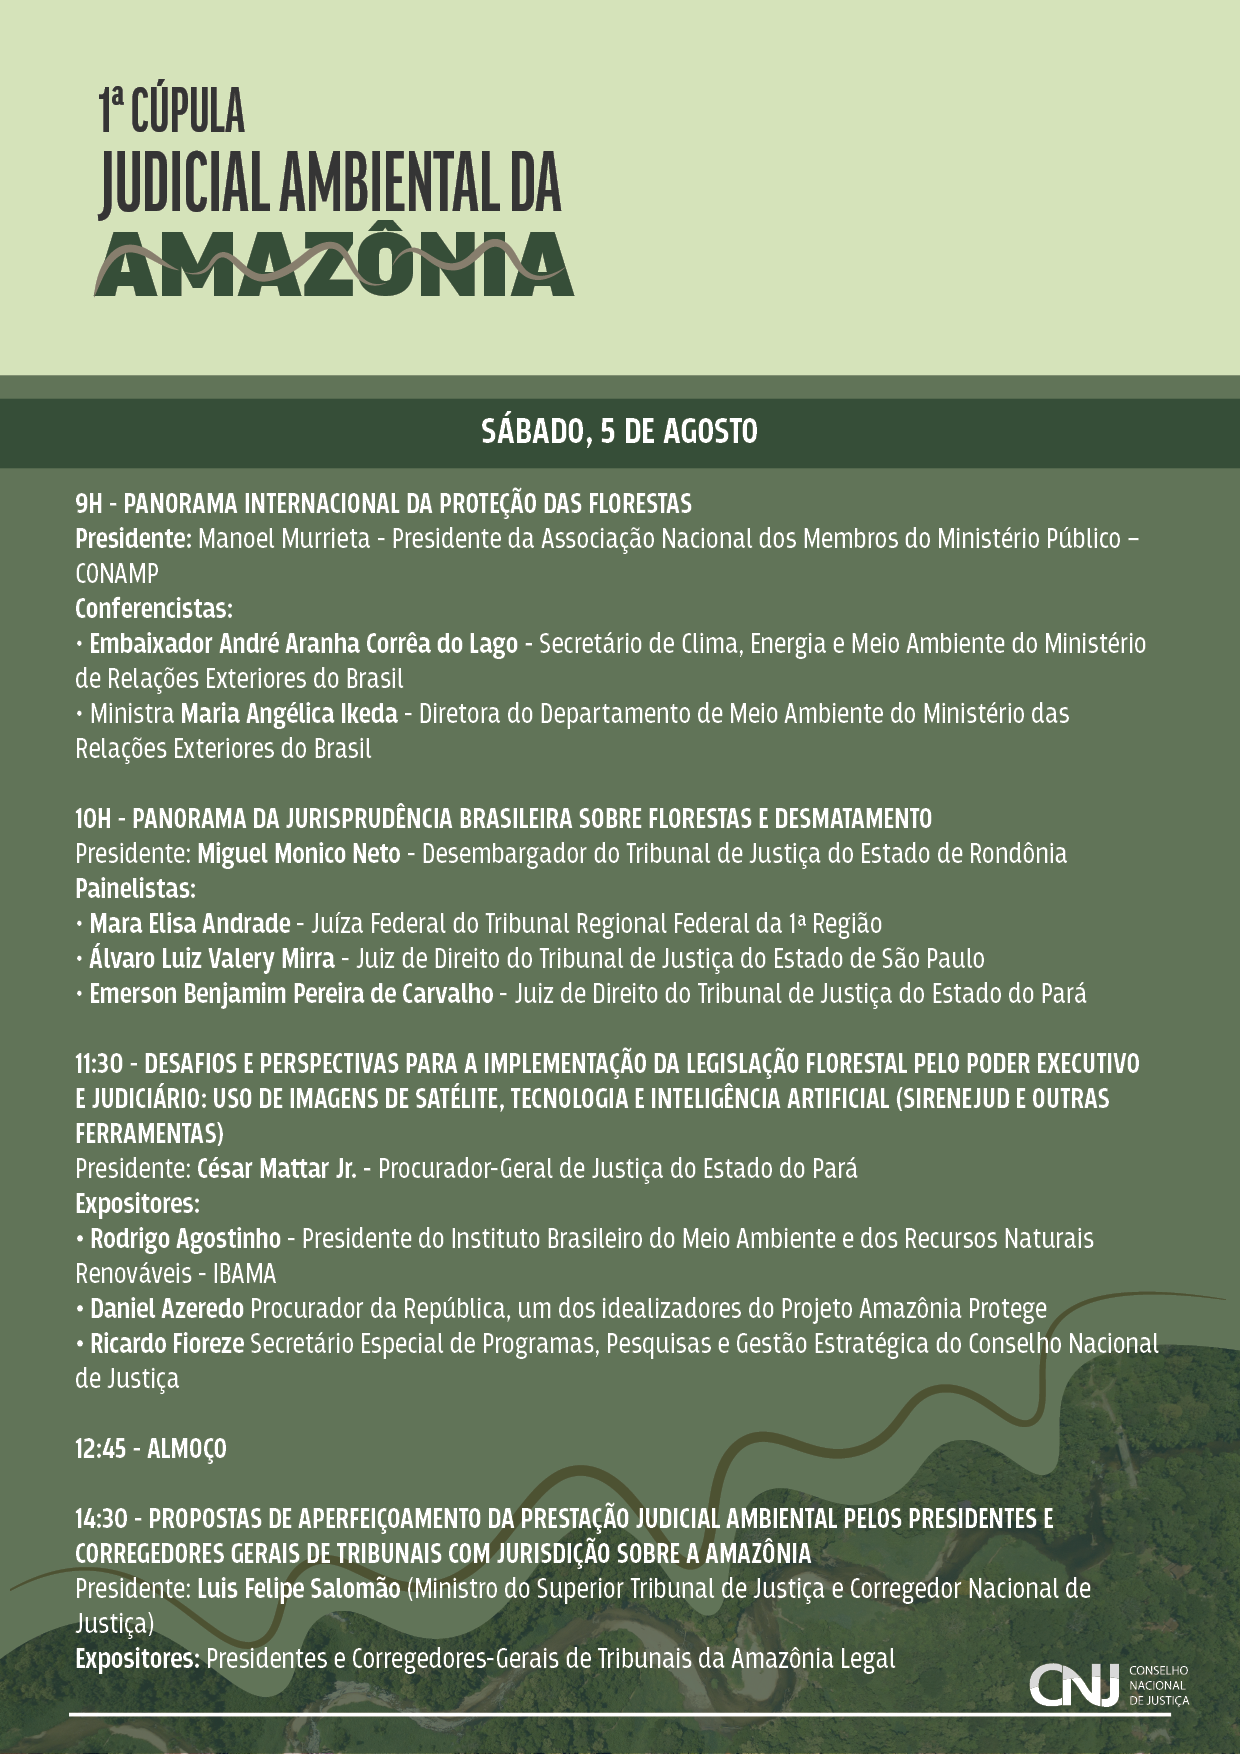 programação do evento: 1ª Cúpula Judicial Ambiental da Amazônia – Juízes e Florestas em formato jpeg. Identidade visual da programação com as informações de horário, temas e seus participantes.